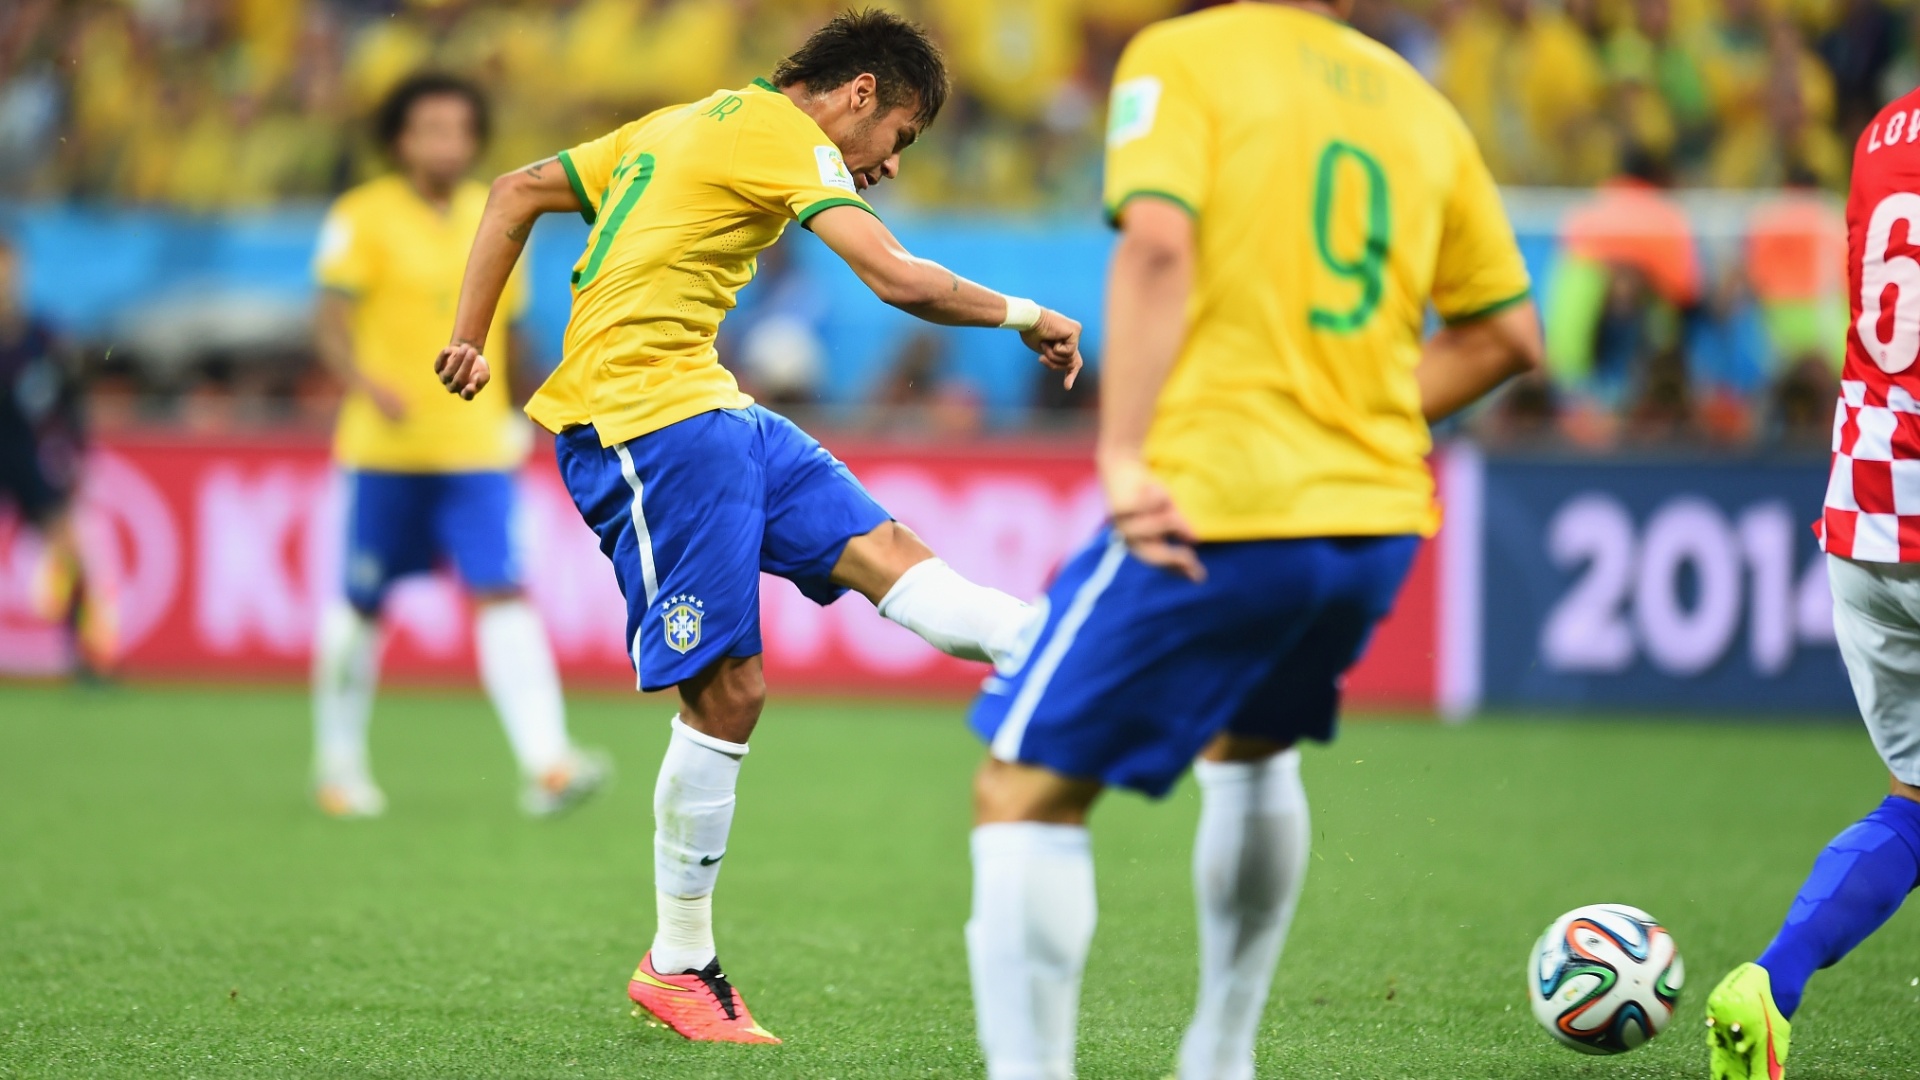 12.jun.2014 - Neymar finaliza de fora de área e empata o jogo para o Brasil contra a Croácia, na estreia da Copa